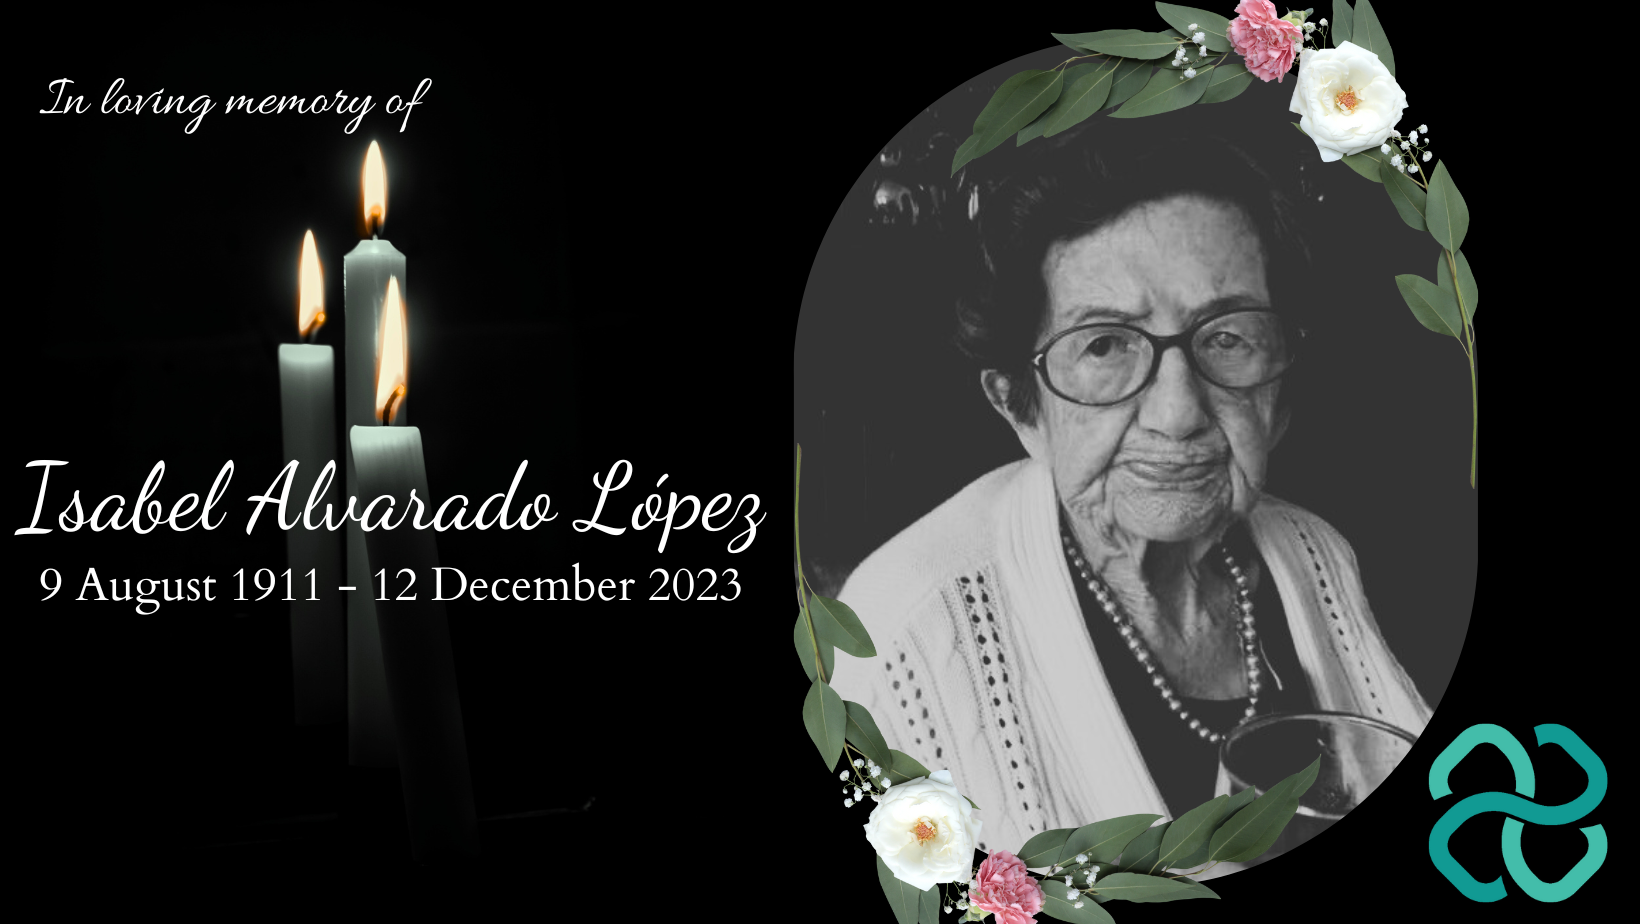 Isabel Alvarado López at 112